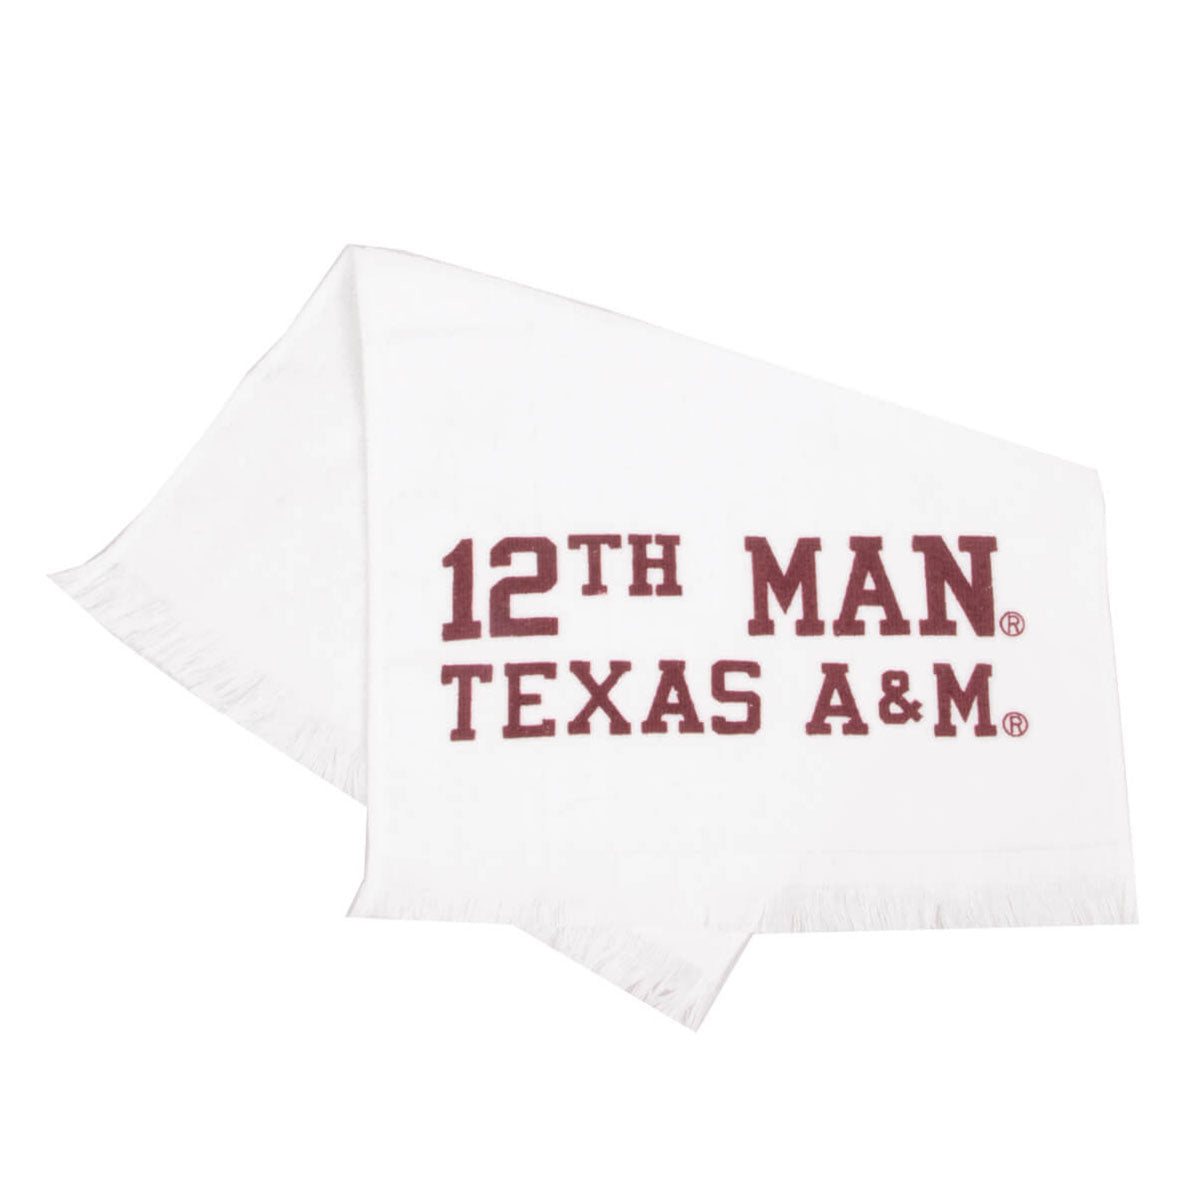 Texas A&M Aggie 12th Man Towel